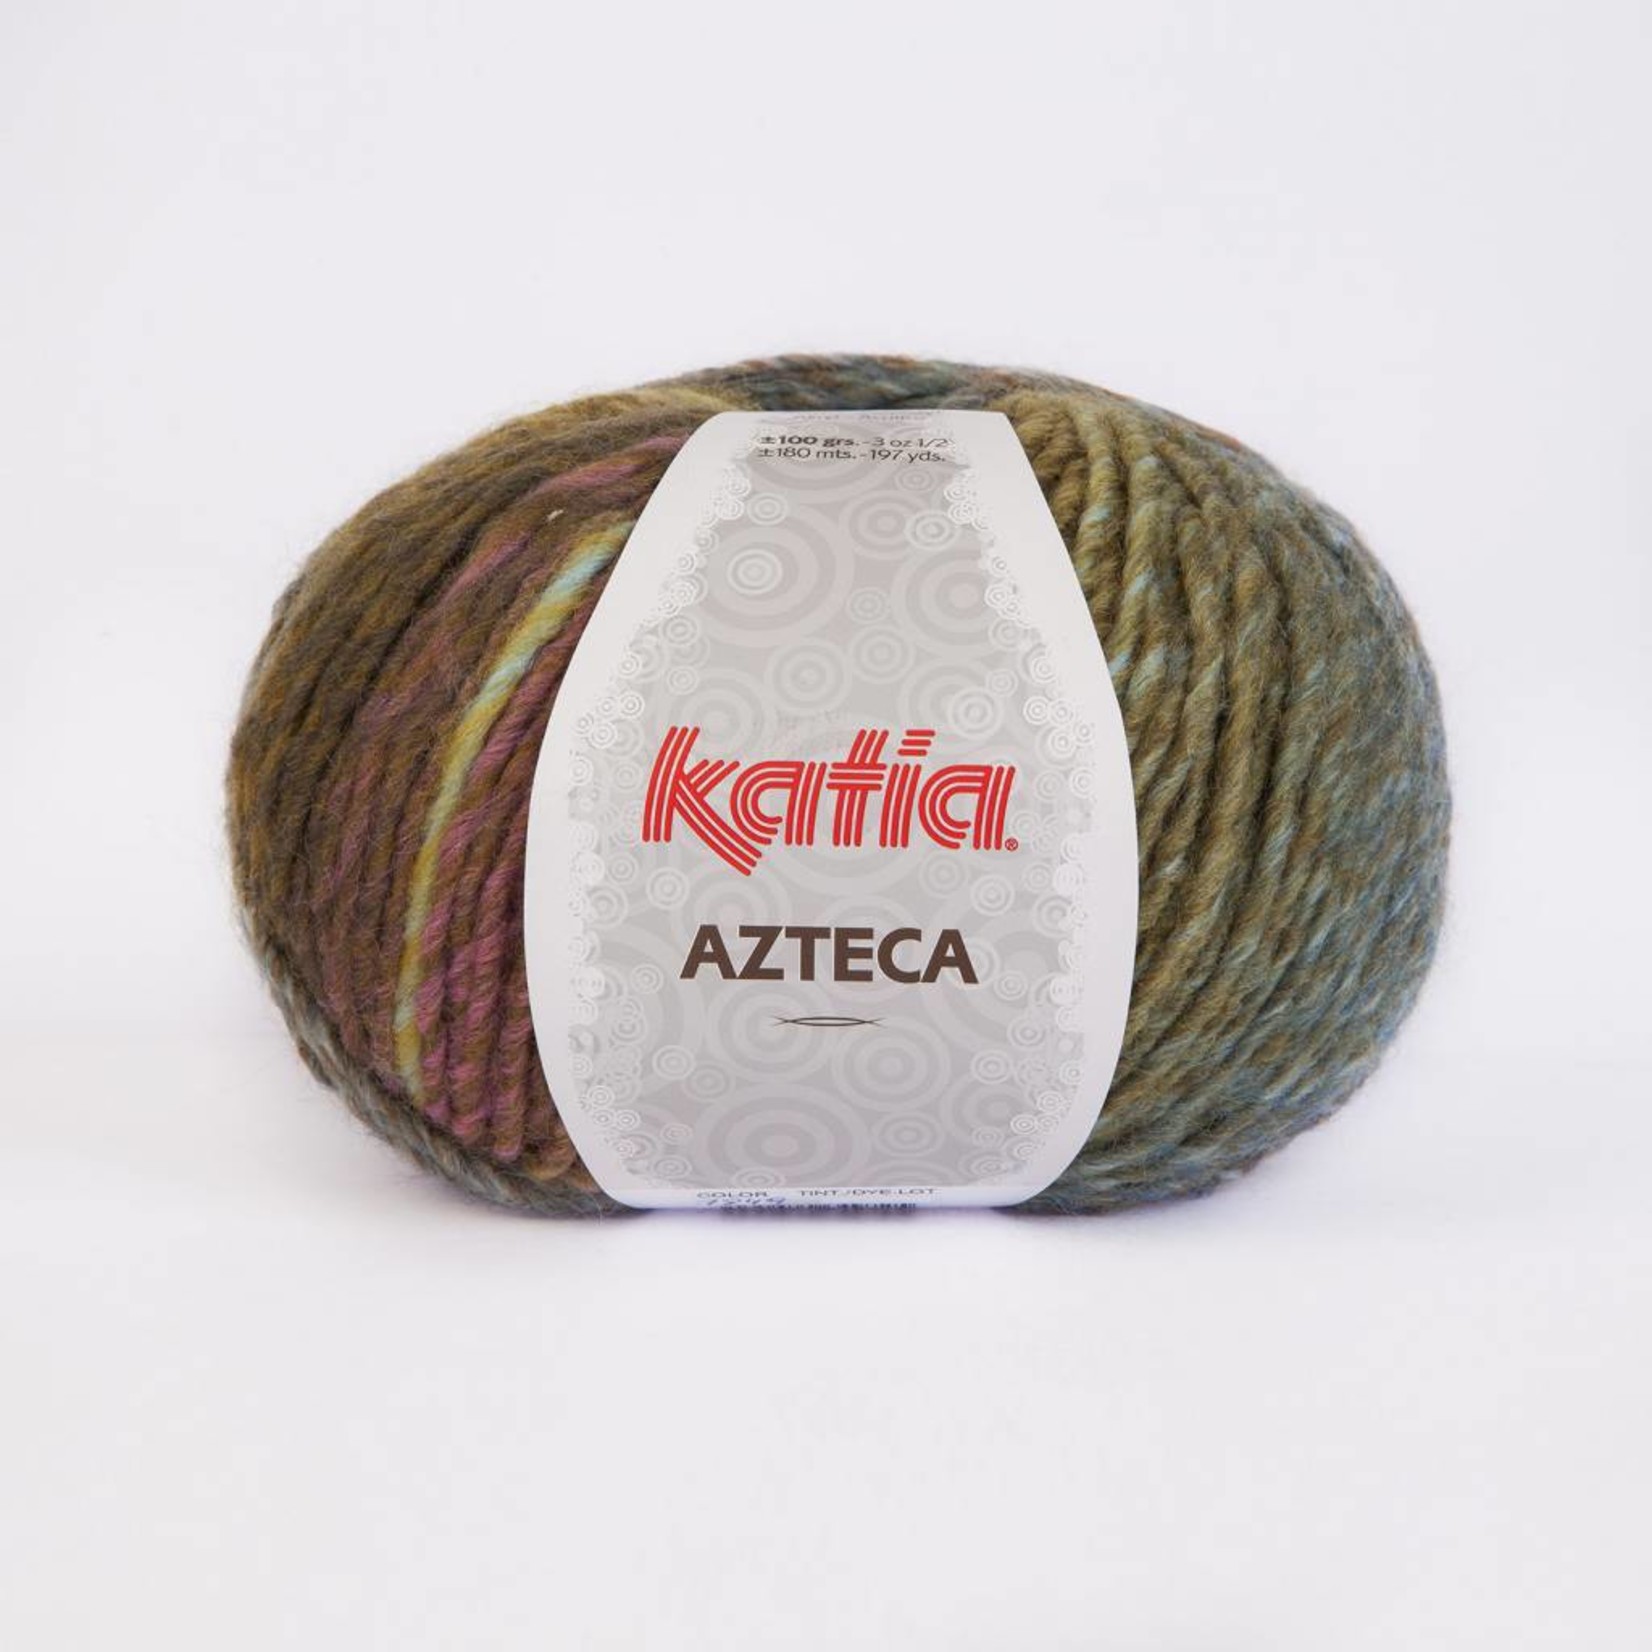 Katia Azteca wol 7849 Roze/Groen/Blauw